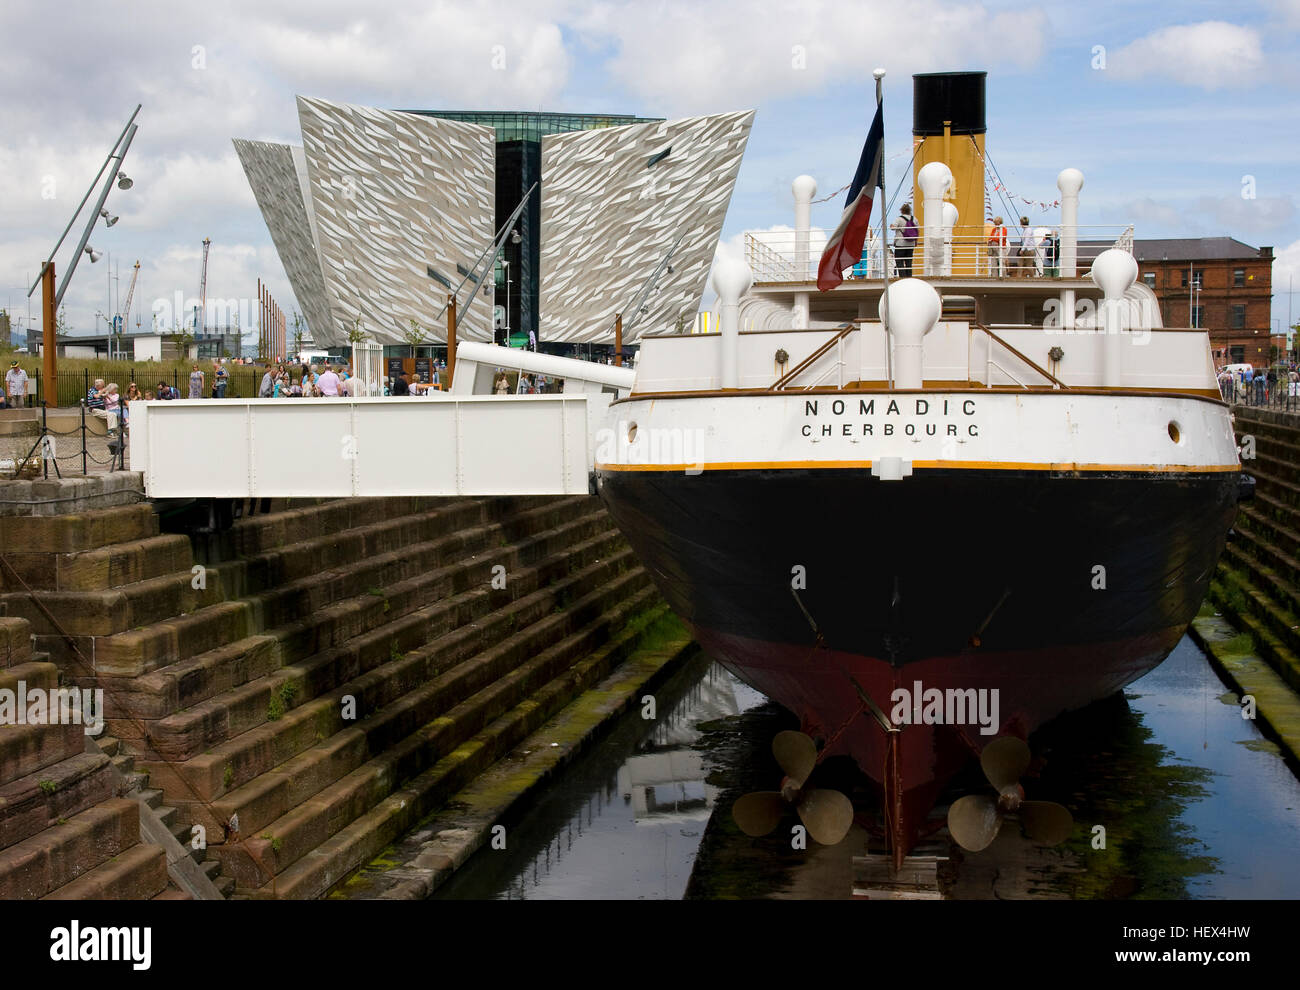 S S nomades, d'offres pour le Titanic gisant dans Hamilton, station d'accueil de Belfast Titanic Titanic avec le bâtiment en arrière-plan Banque D'Images